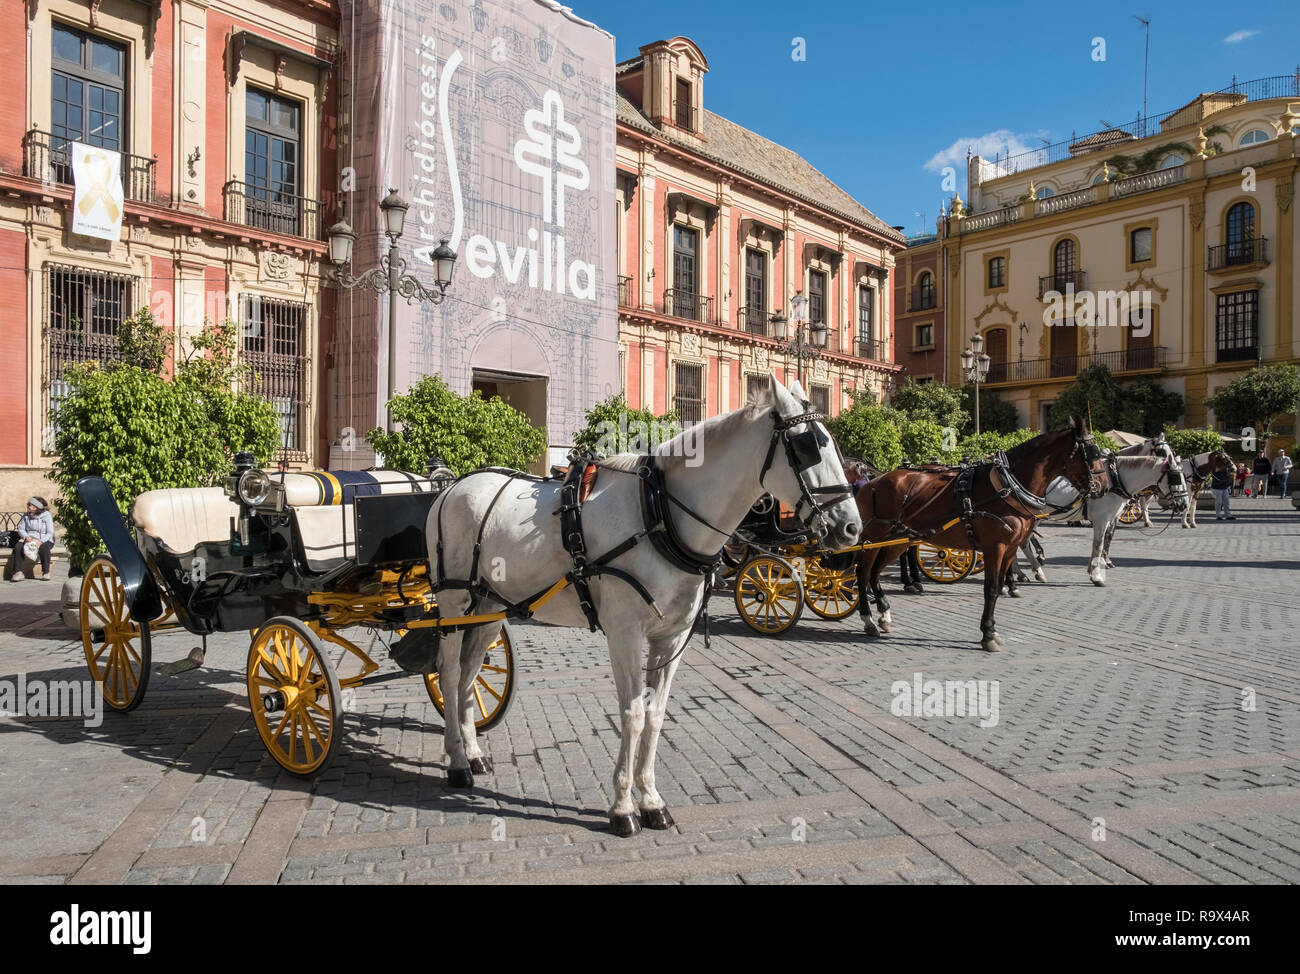 Popolare località turistica con carrozze trainate da cavalli in Plaza Virgen de los Reyes, Siviglia, Spagna Foto Stock